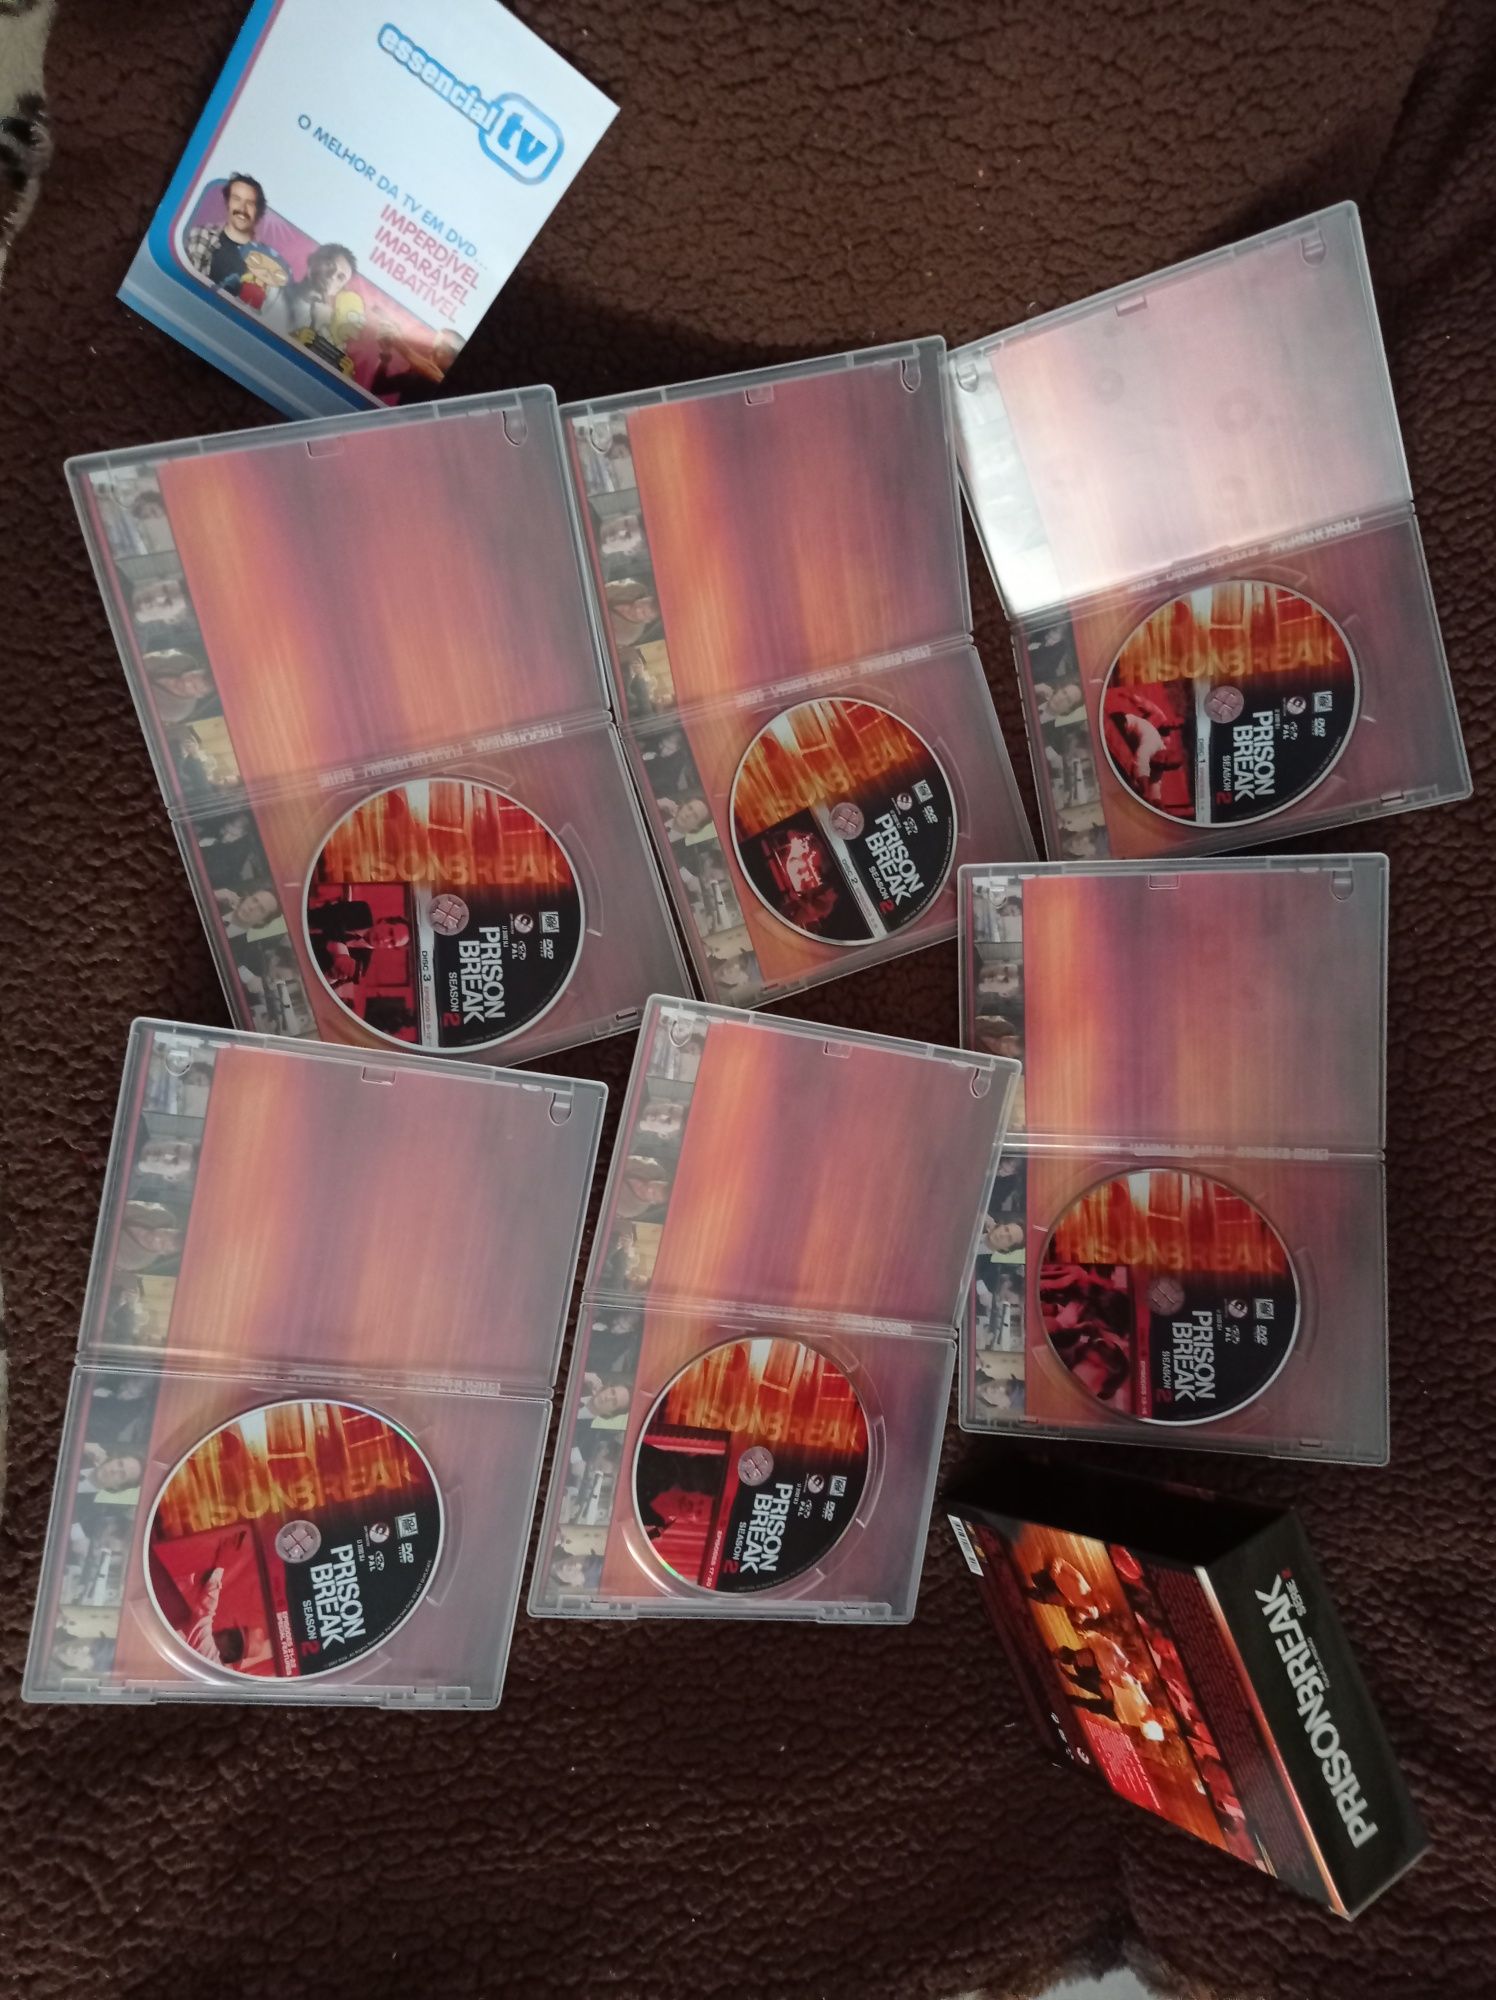 DVD Box-Prison Break Fuga da Prisão -2.ª Temporada completa (6 DVD’s).